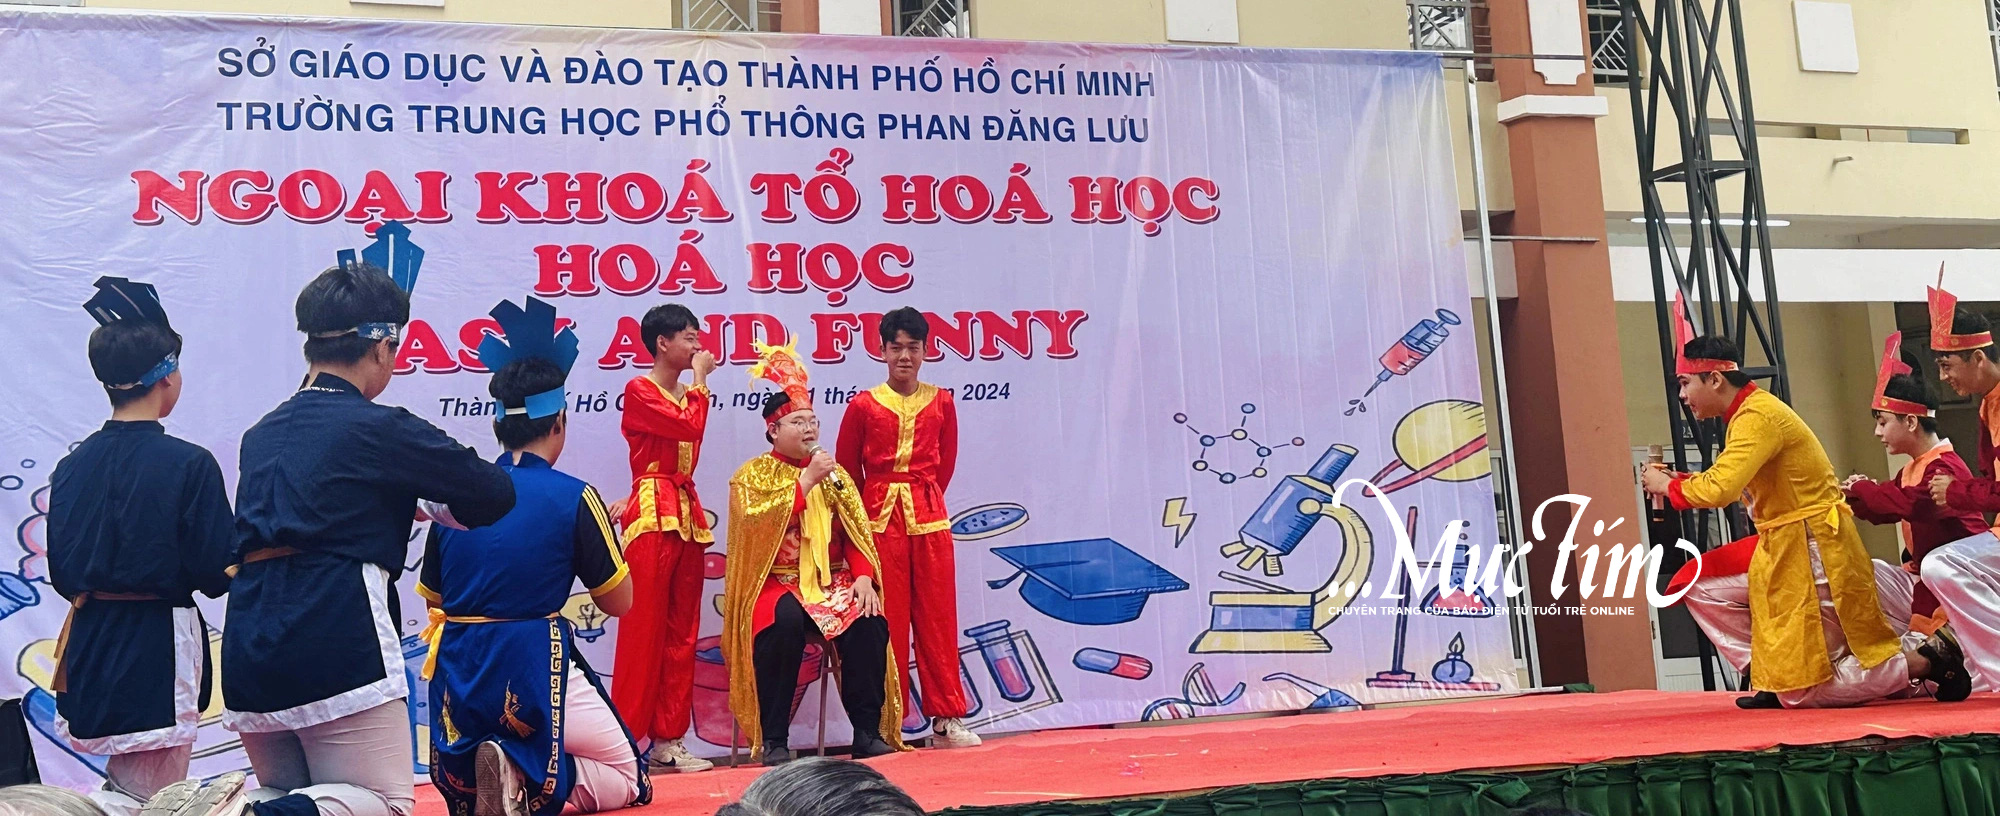 Hóa học ‘dễ và vui’ theo cách của teen Trường THPT Phan Đăng Lưu- Ảnh 3.